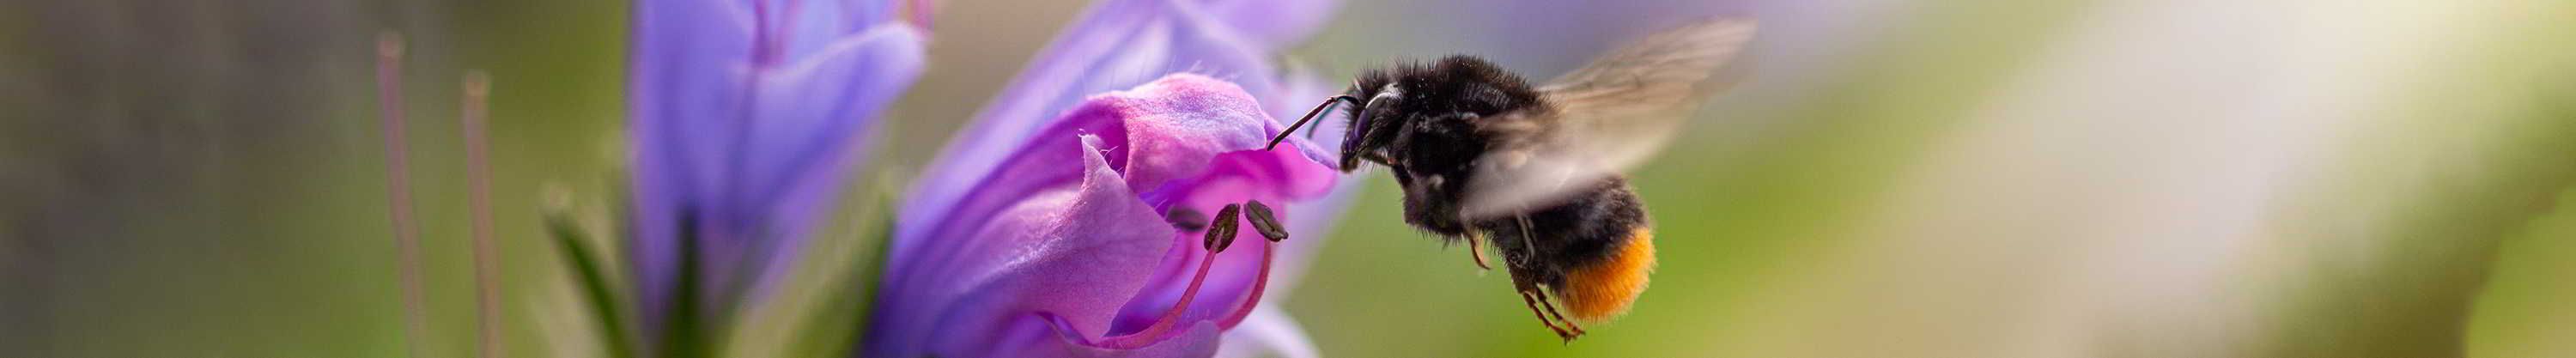 Bee feeding from flower